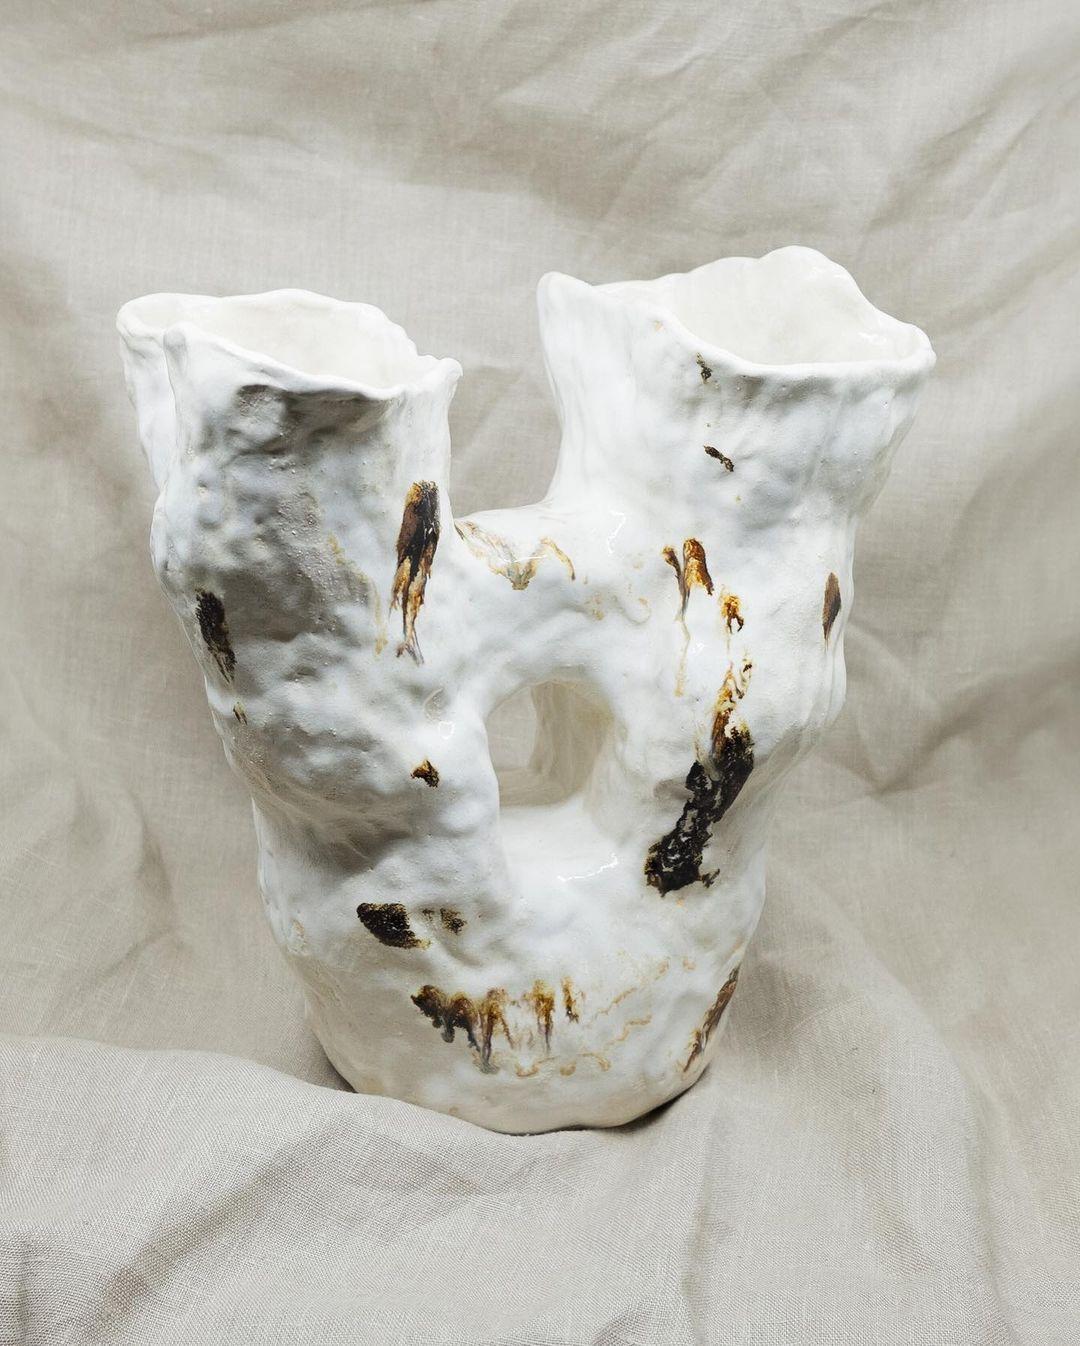 Einzigartige Ukiyo II-Vase von Marthine Spinnangr
Einzigartig
Abmessungen: T 30 (oben) / 14 (unten) x B 15 x H 45 cm
MATERIALIEN: Steingut-Ton
Verschiedene Glasurarten verfügbar.

Ukiyo-Vasen werden in Handarbeit aus Steinzeugton hergestellt und